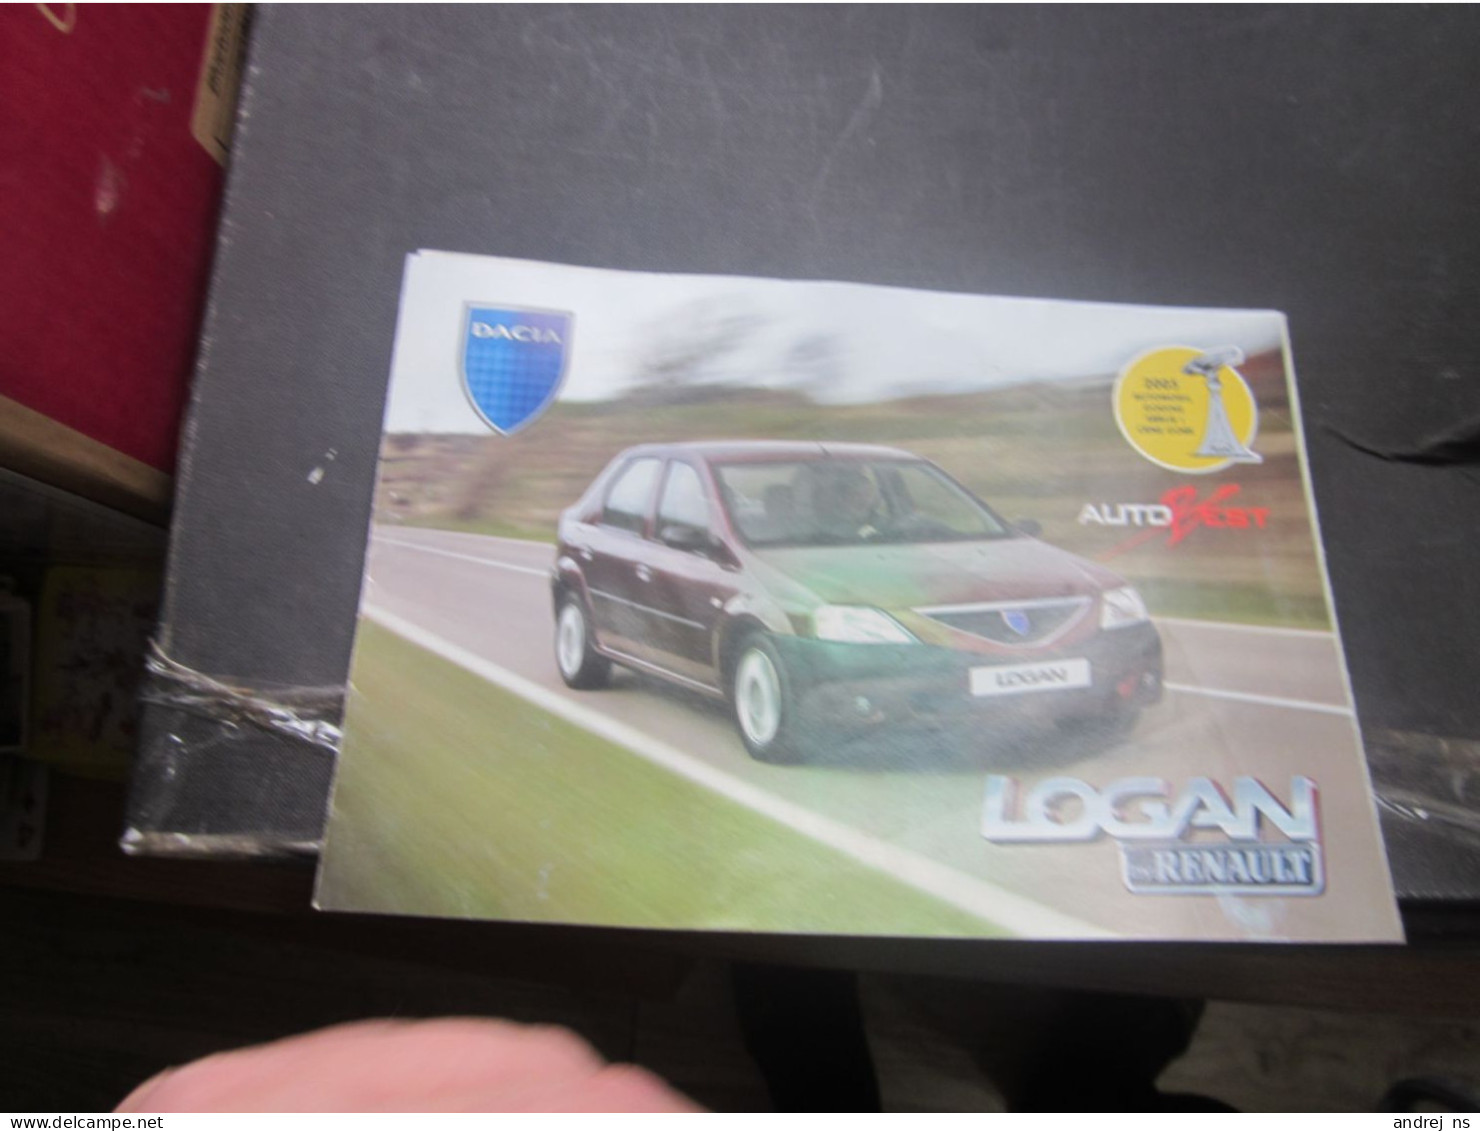 Dacia Logan Renault - Cars